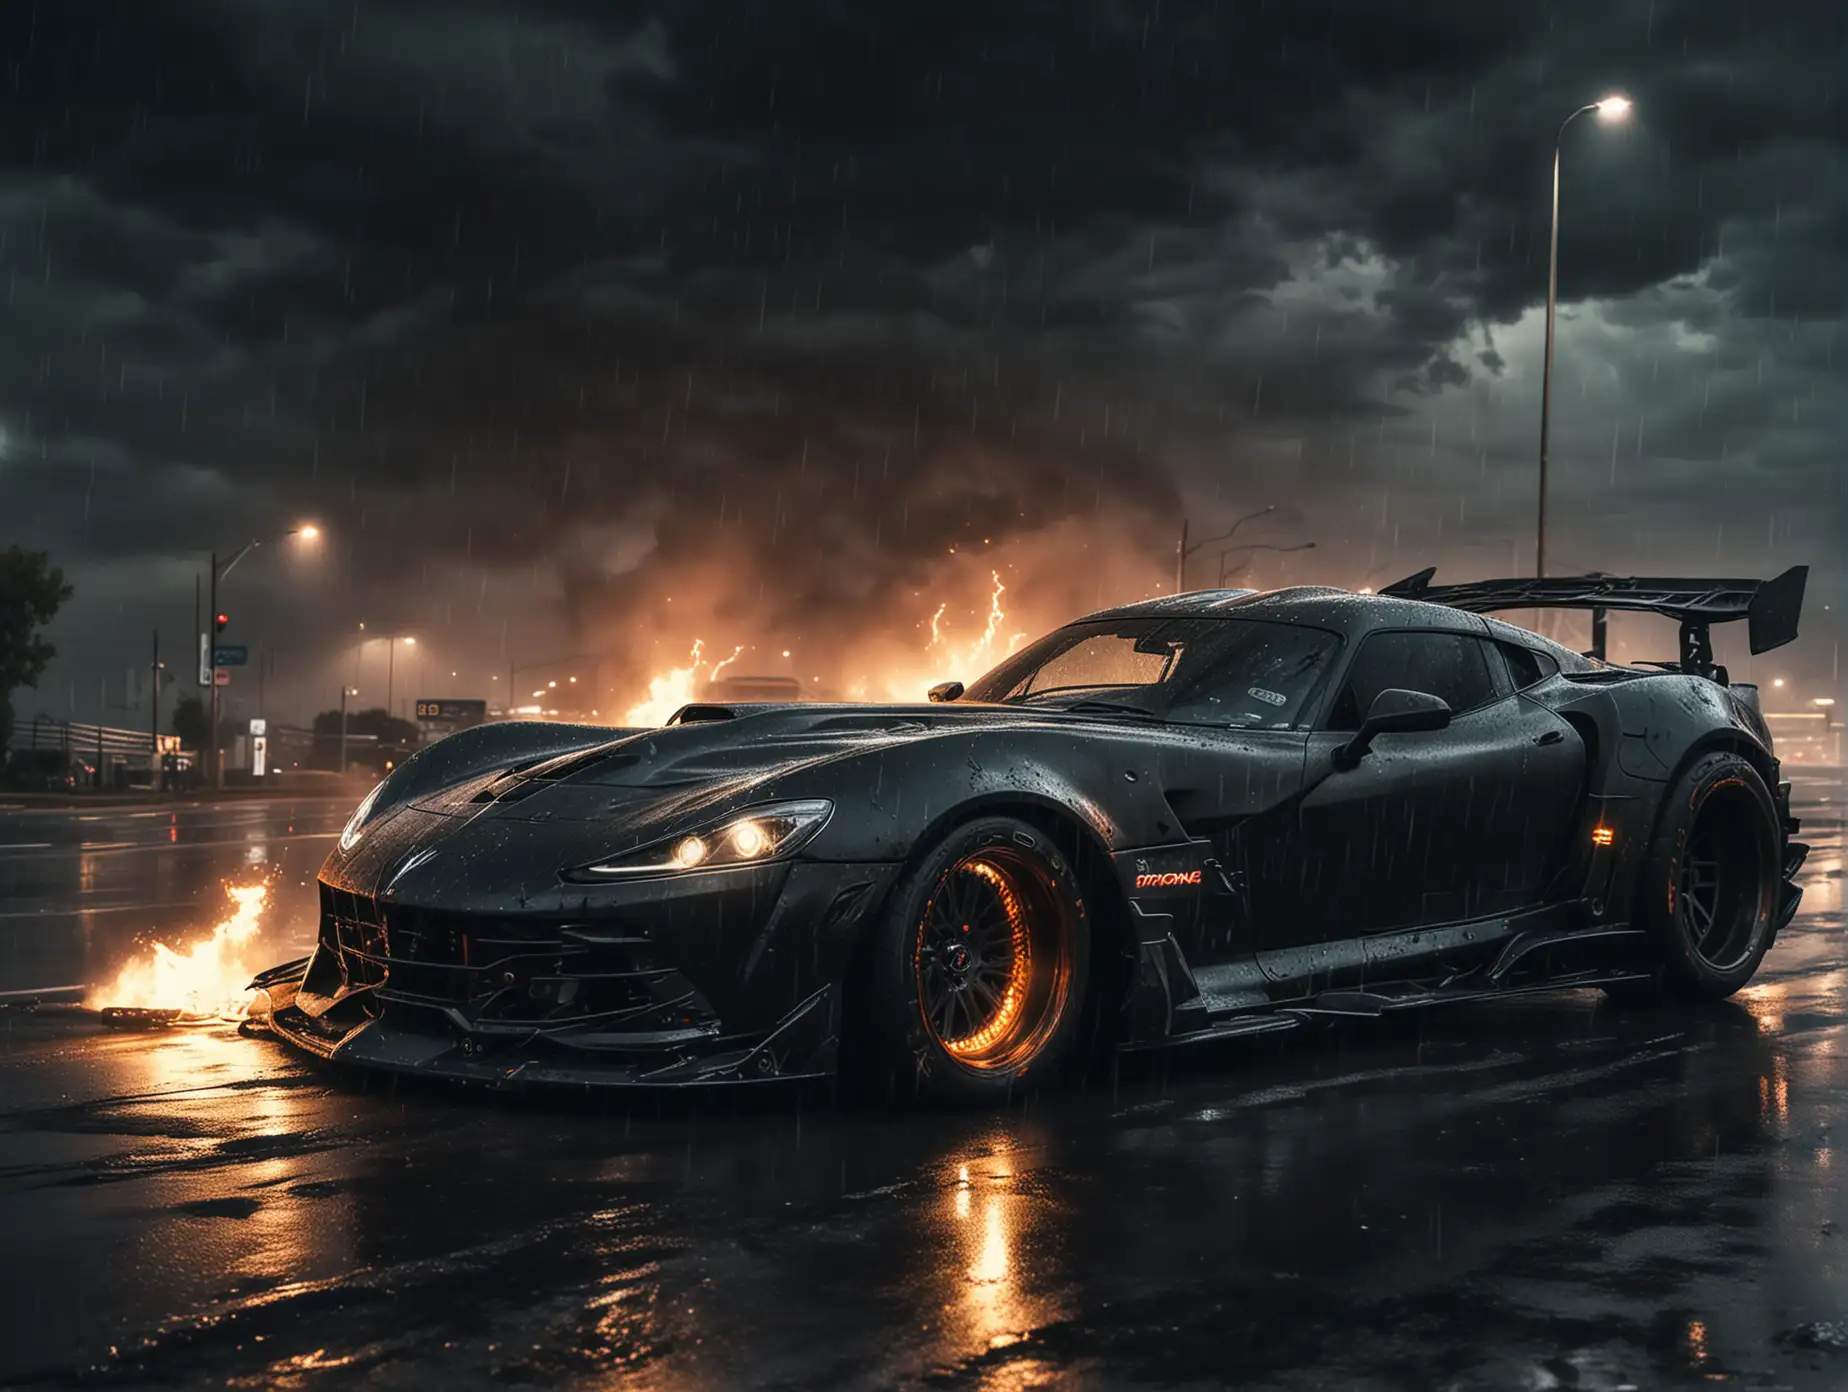 Futuristic-Evil-Venom-Car-Tuning-Drifting-at-Night-on-Rainy-Motorway